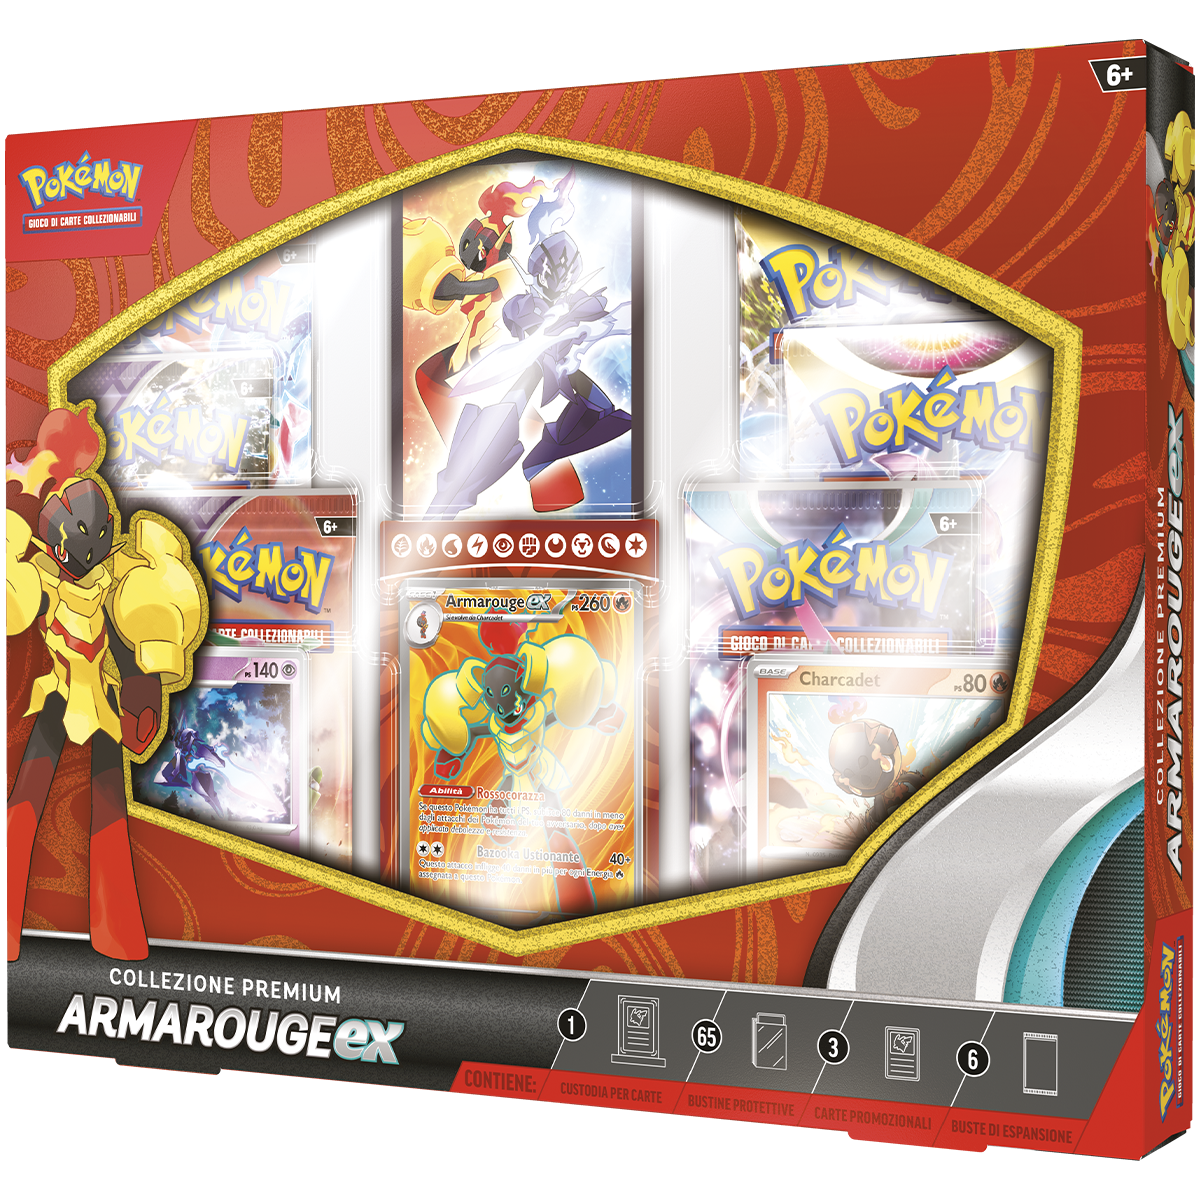 Pokémon collezione premium armarouge-ex - POKEMON